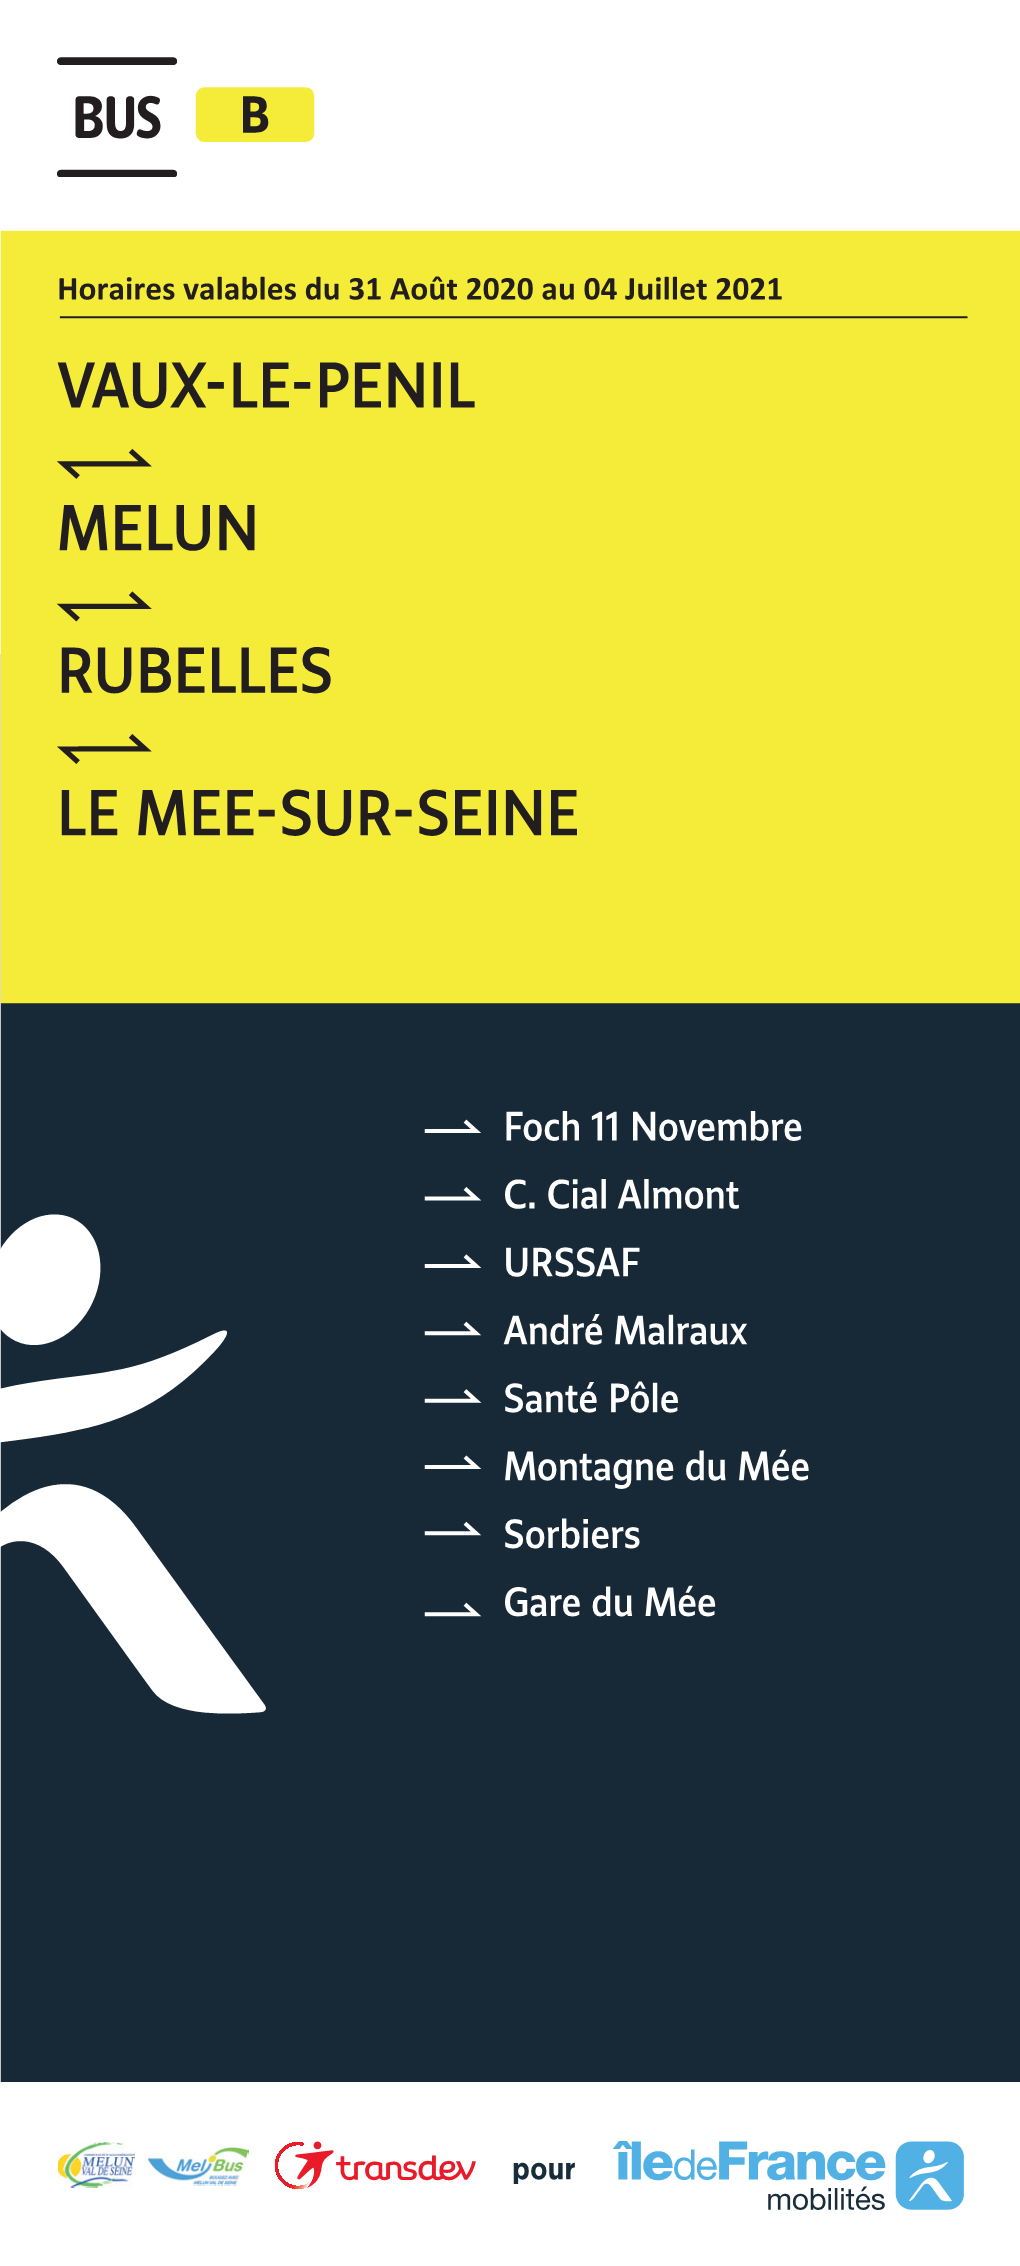 Melun Rubelles Le Mee-Sur-Seine Vaux-Le-Penil